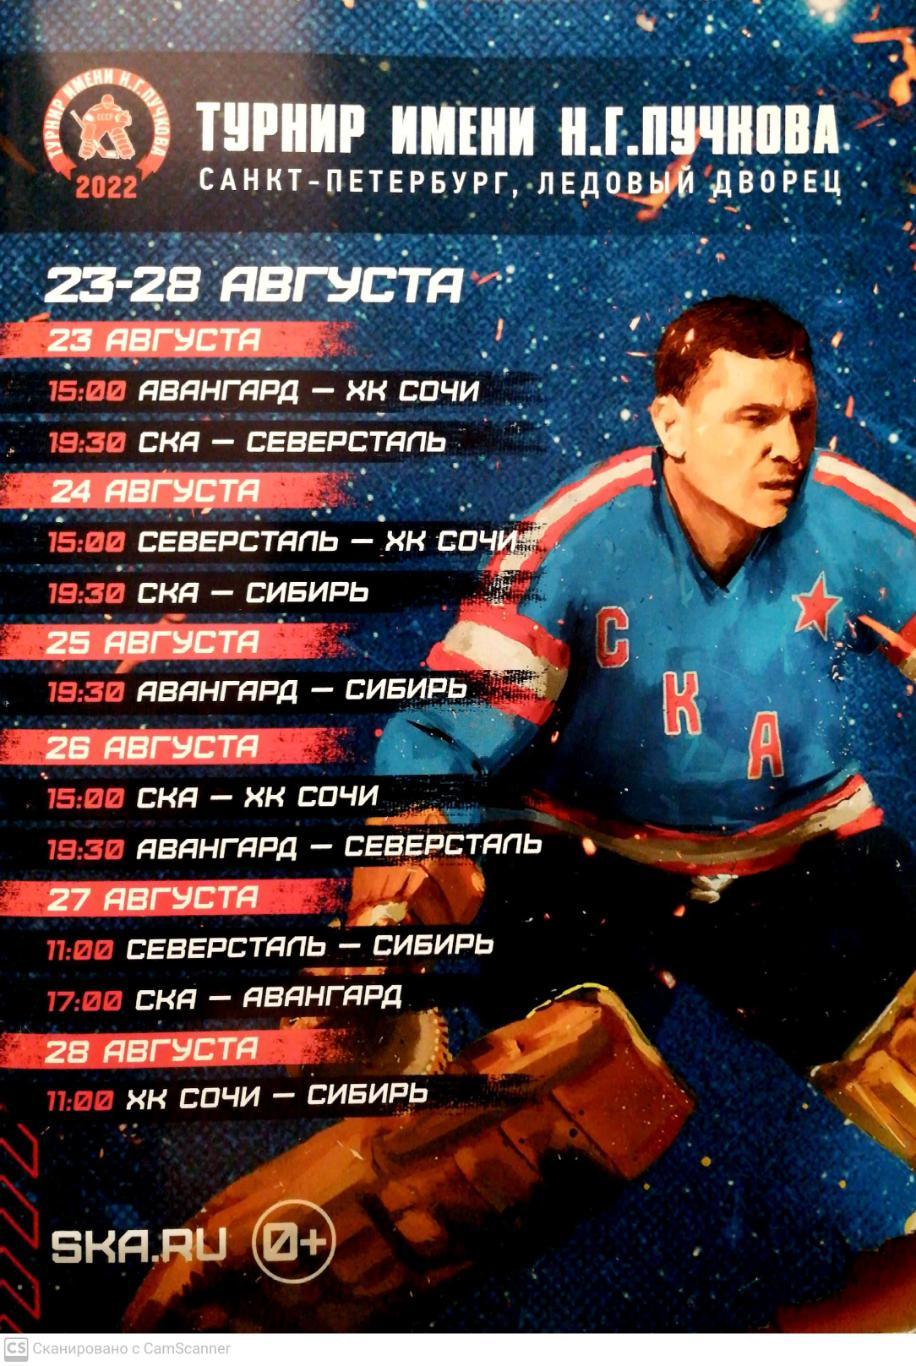 Турнир Пучкова - 2022. 23-28 августа, СПб, 1-й вид